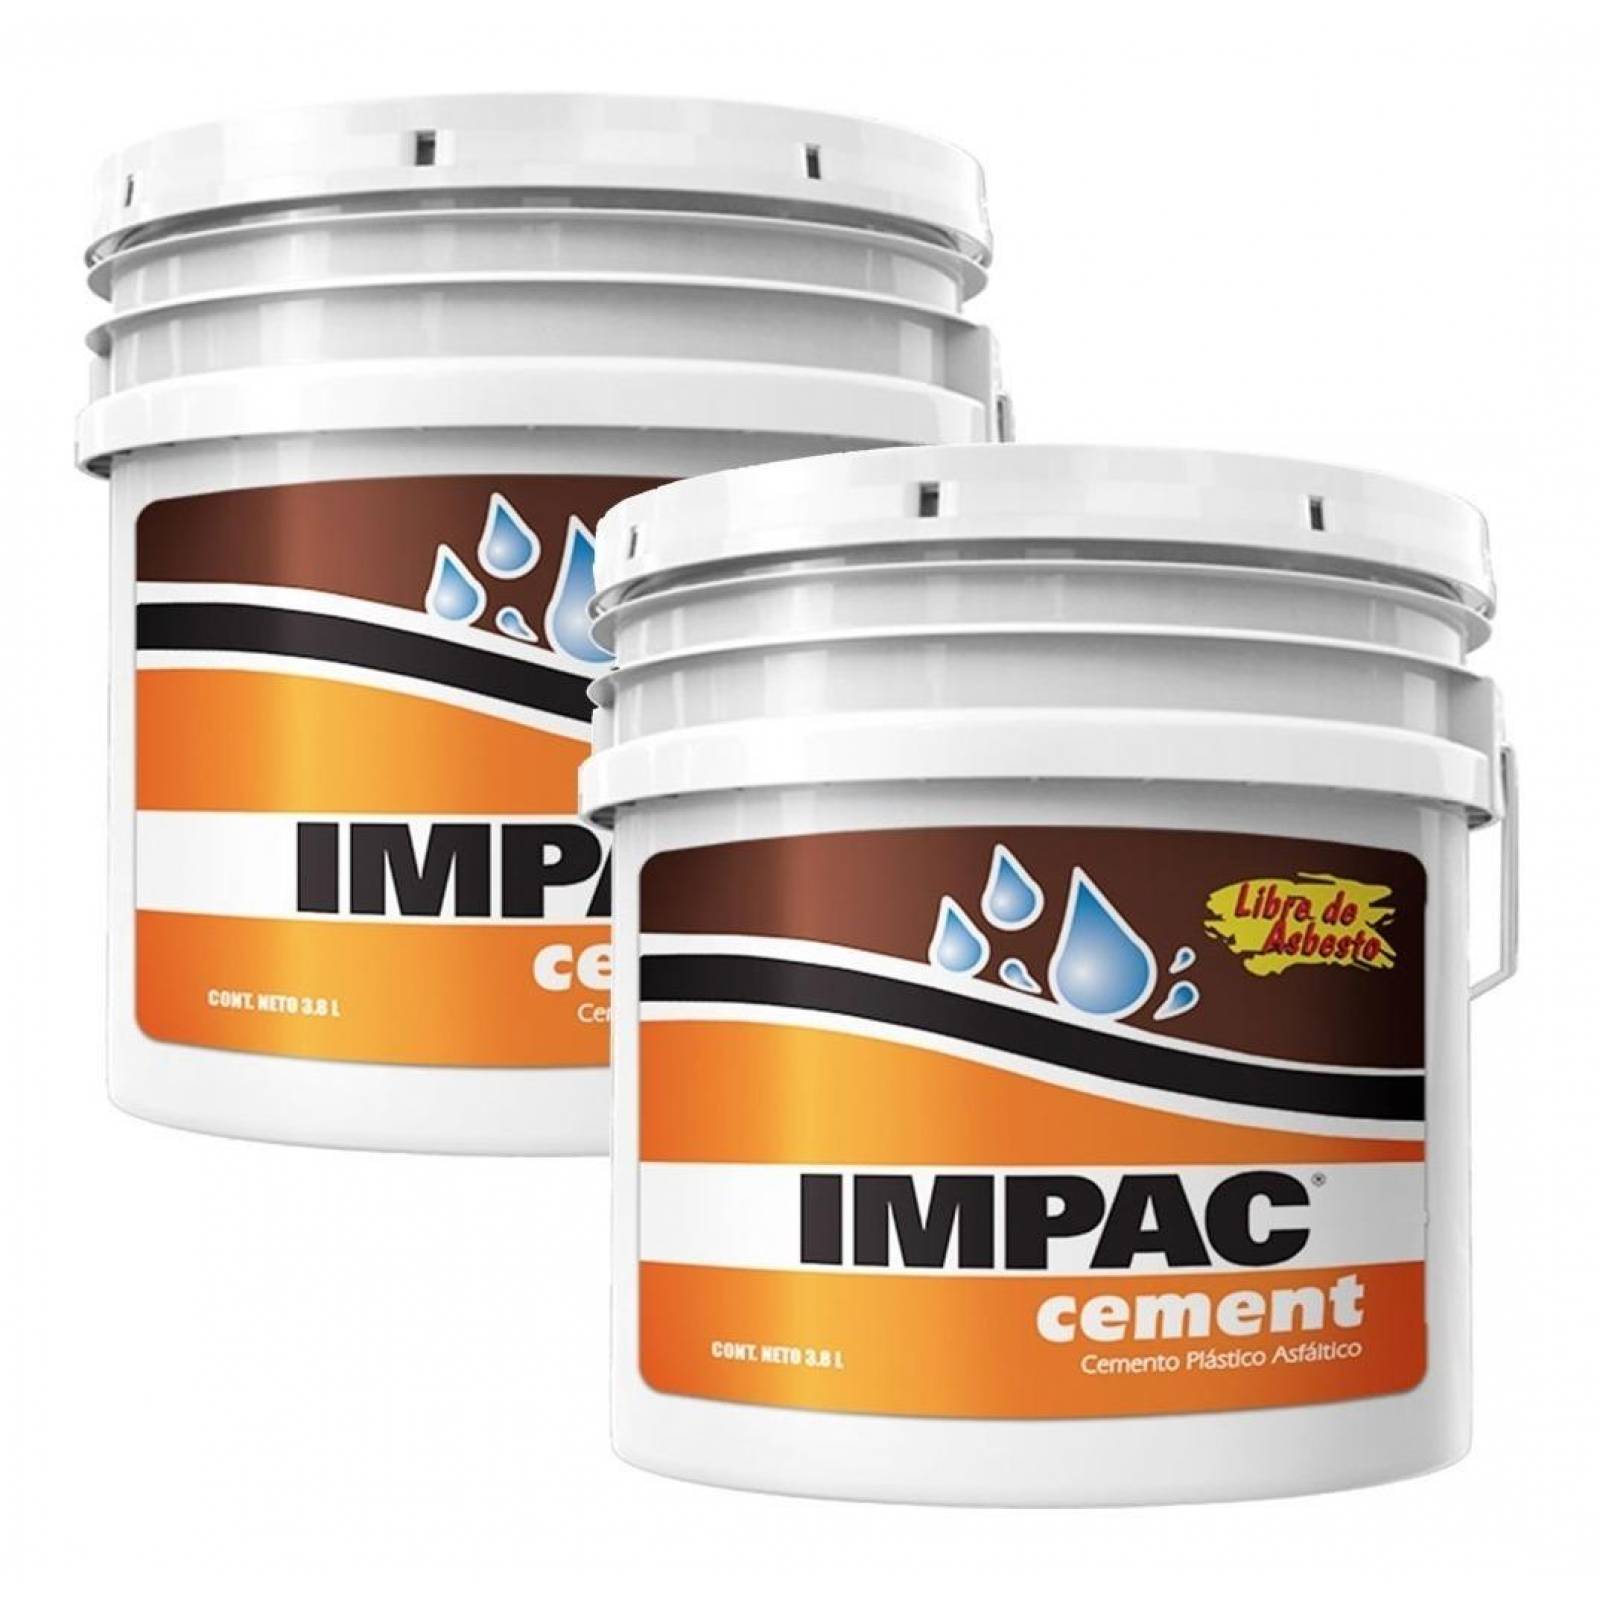 IMPAC Cement 3.9 Lts Cemento Plastico Asfaltico 2 Pack 